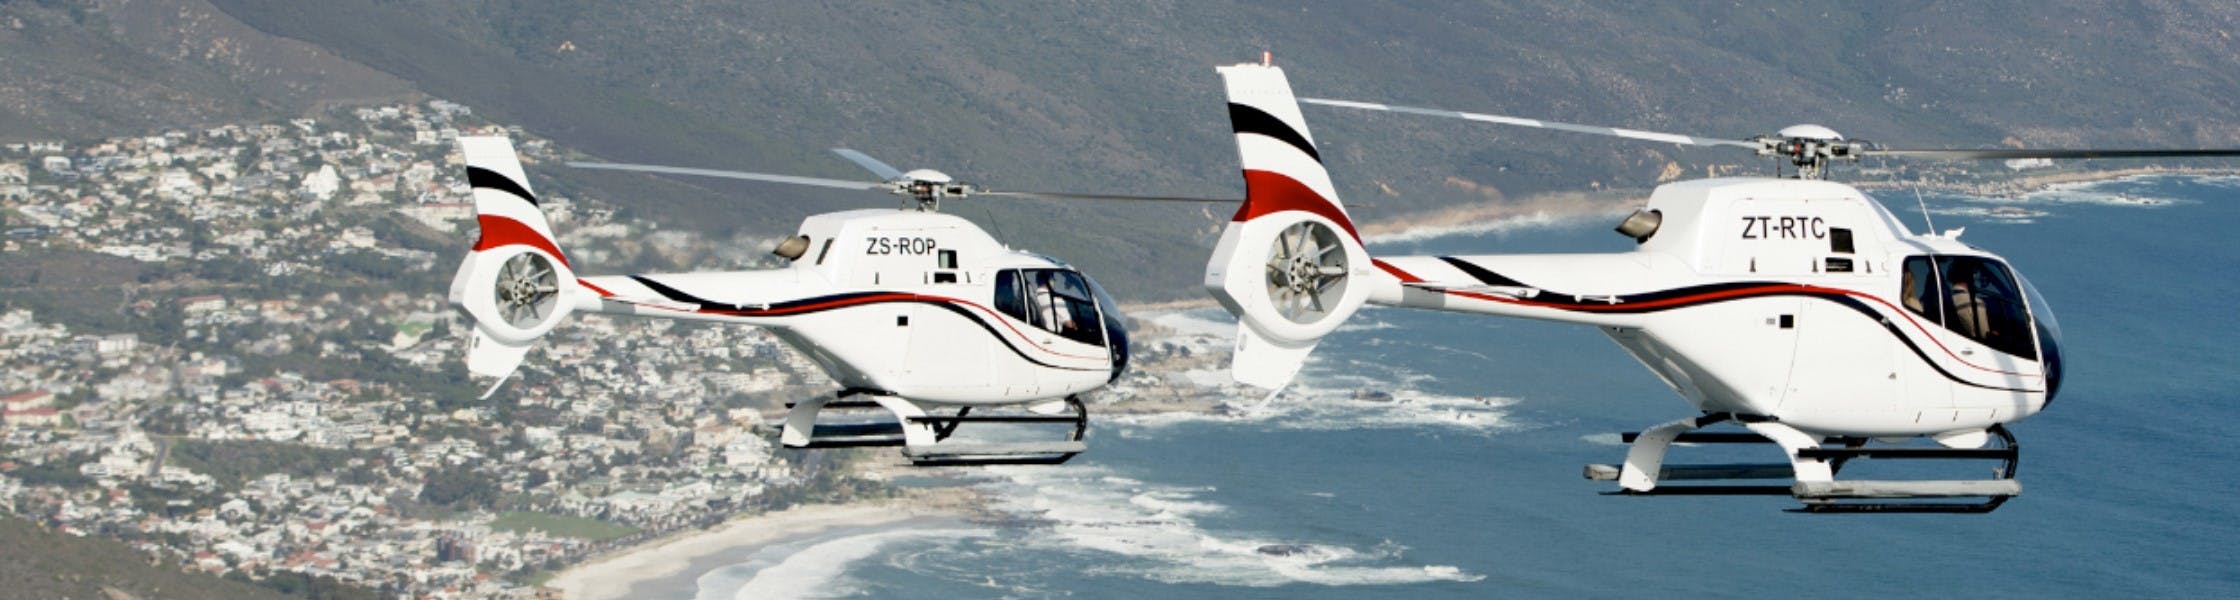 Kapsztad Dwunastu Apostołów 16-minutowy malowniczy lot helikopterem